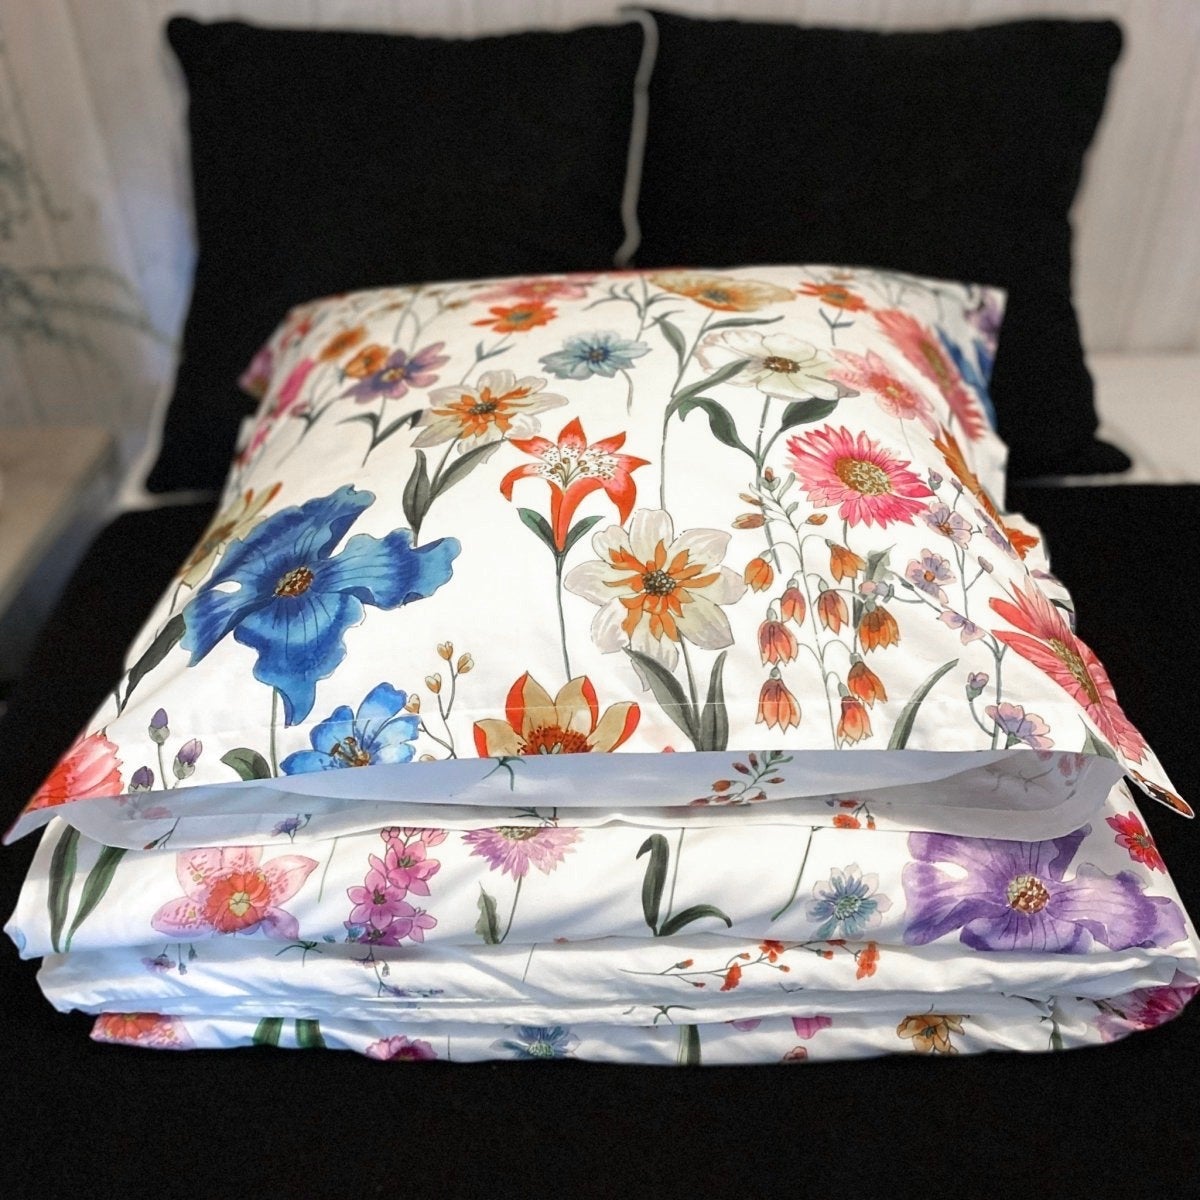 'Bloom' blomstersengetøj sengetøj fra Rune-Jakobsen Design